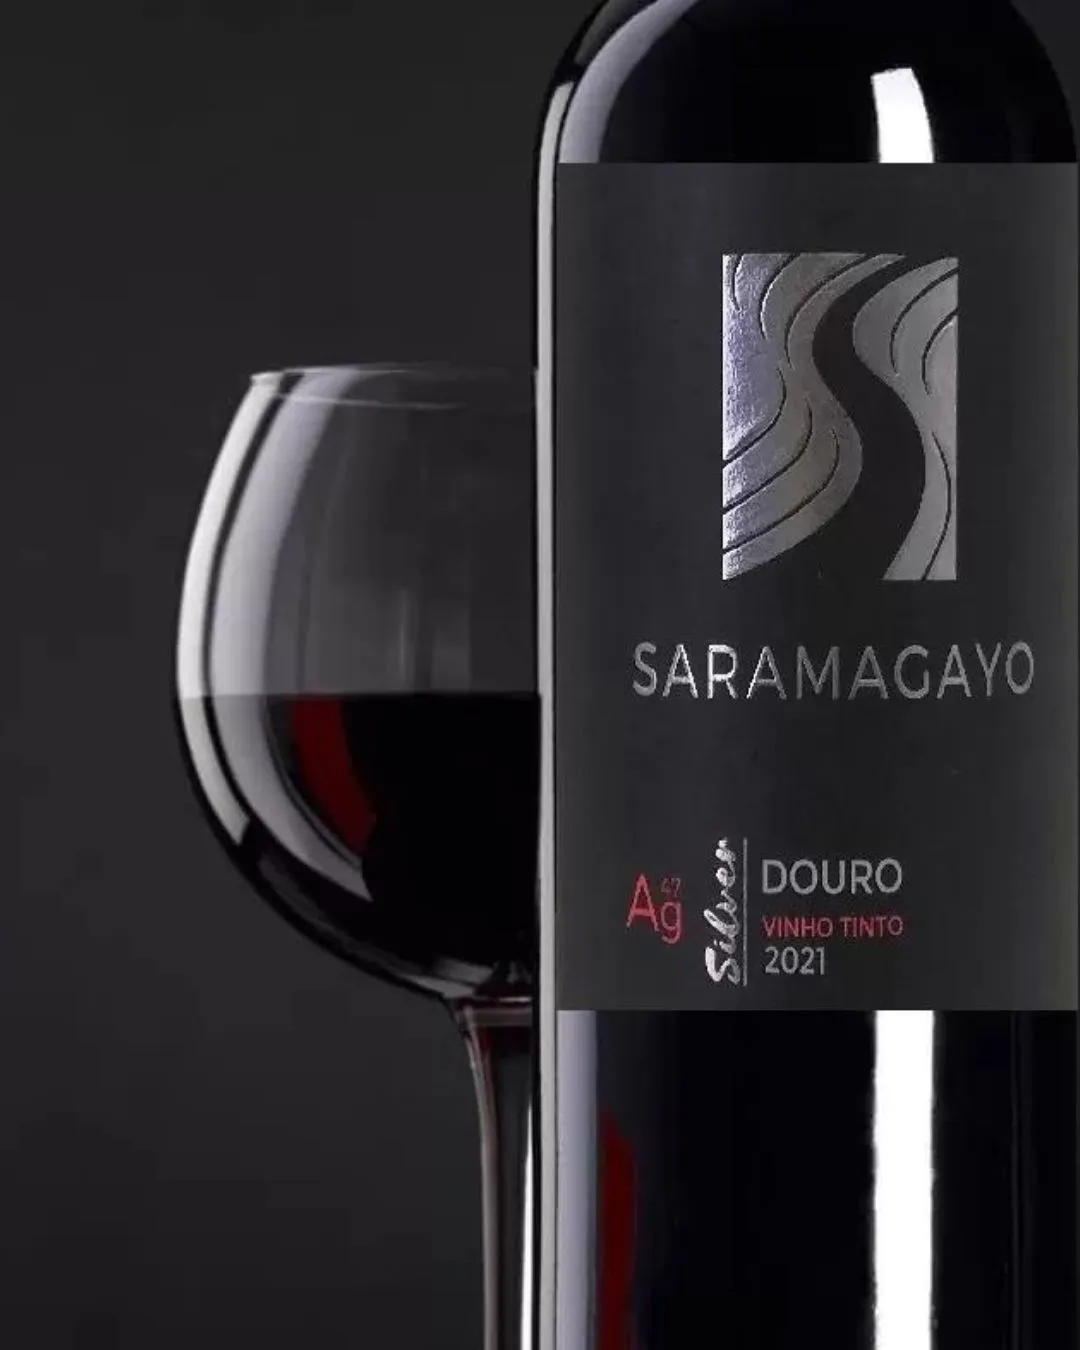 Saramagayo - Bons vinhos do Douro